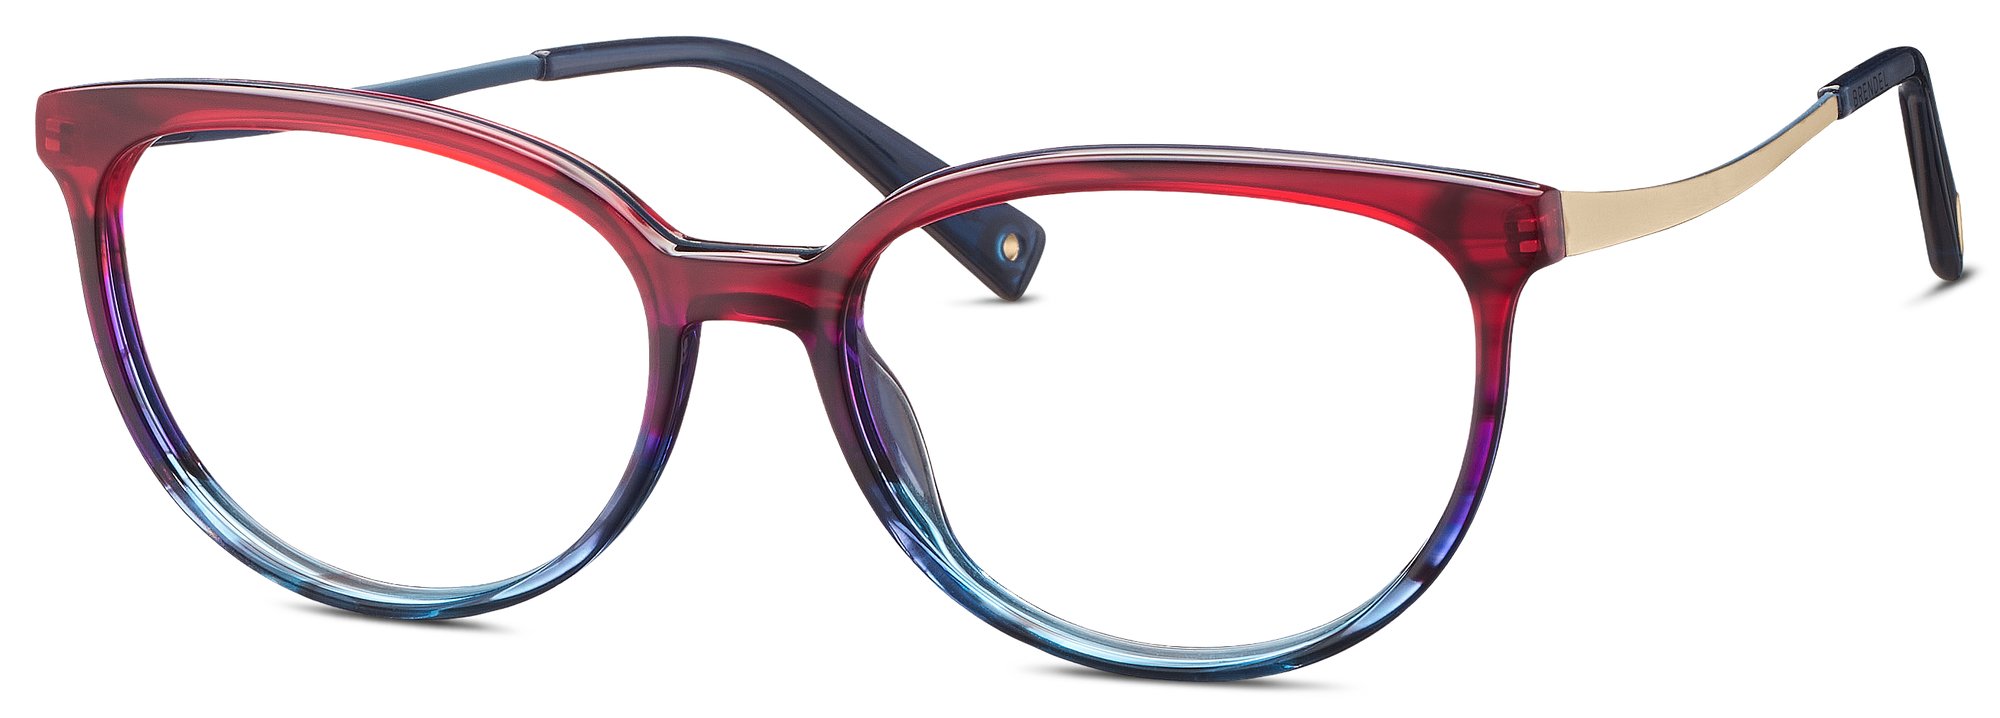 Das Bild zeigt die Korrektionsbrille 903190 57 von der Marke Brendel in rot-blau verlauf.